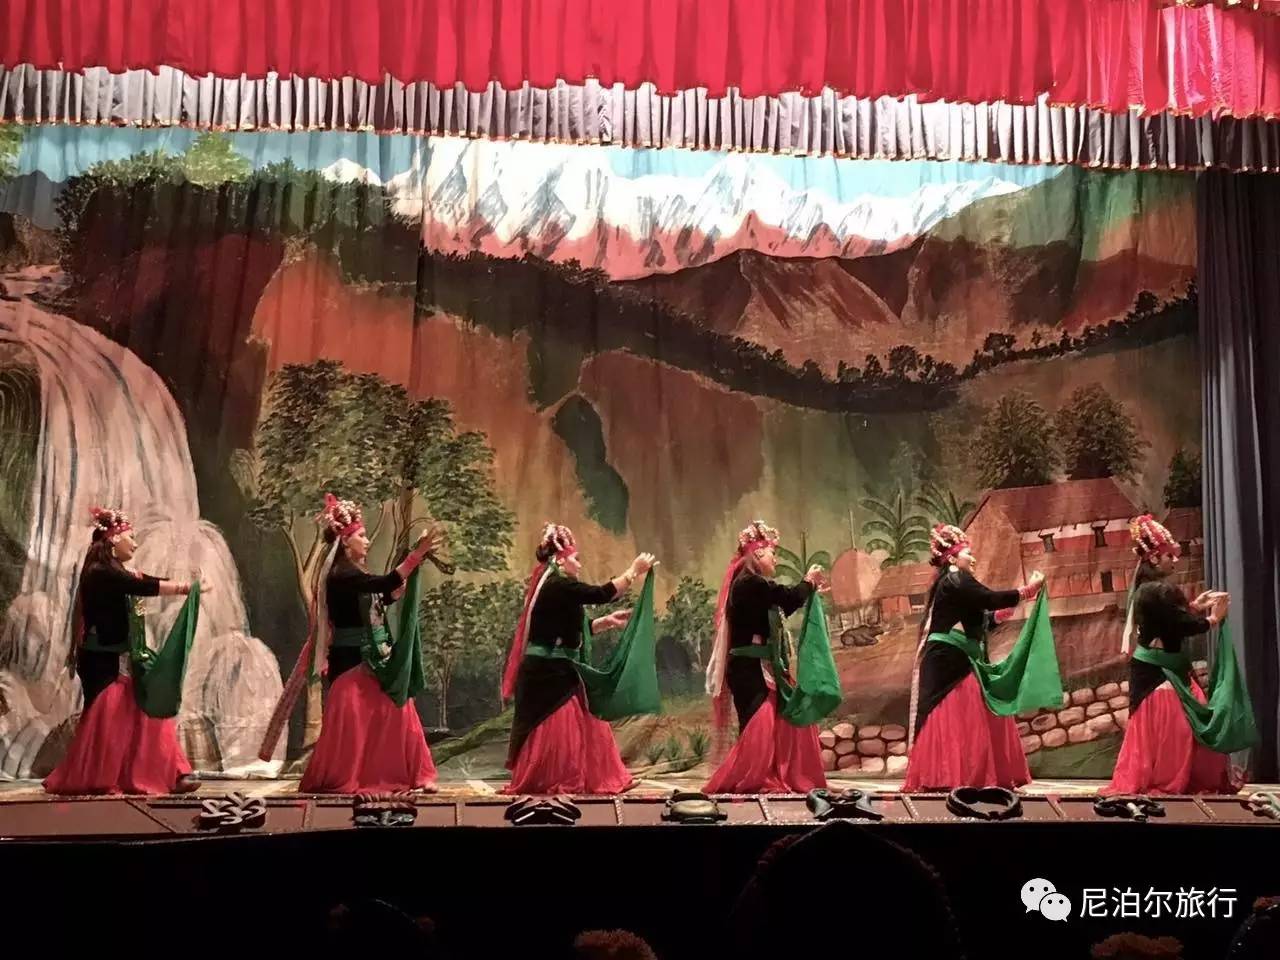 【遨游摄影】不丹戒楚节、尼泊尔洒红节摄影创作11日游-中青旅遨游网